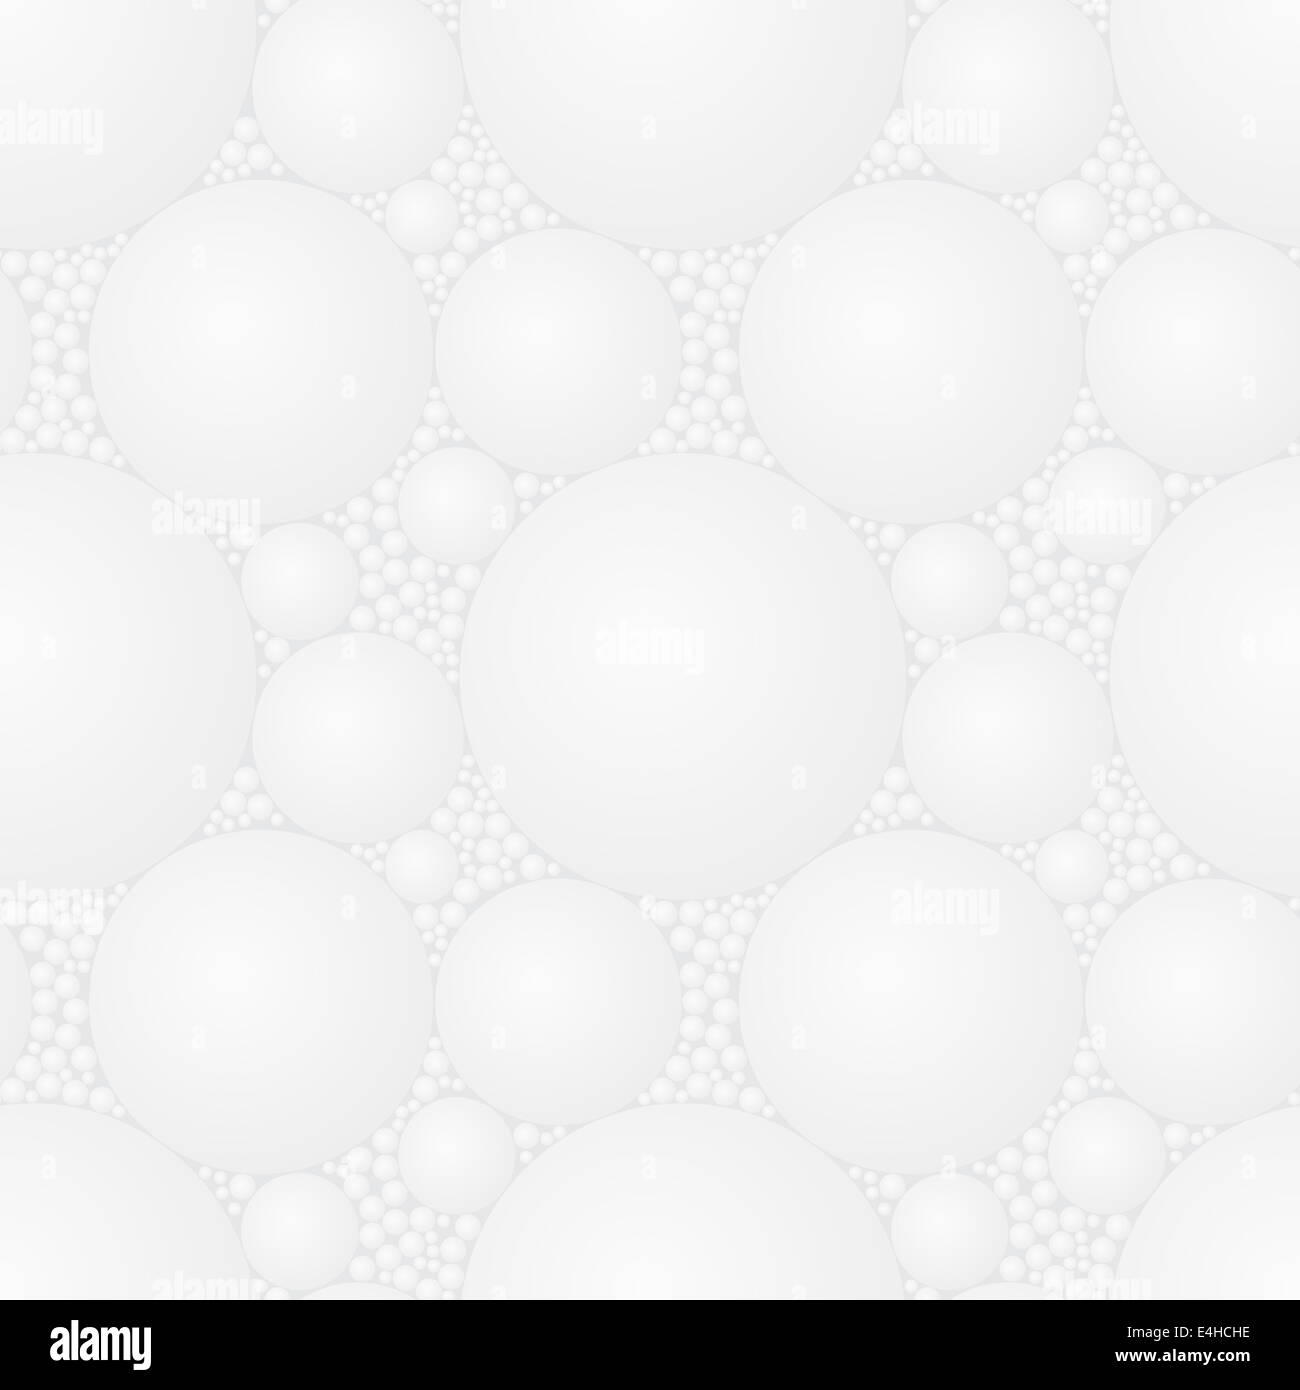 Seamless quadrato grigio chiaro styrofoam pattern - la texture astratta per la progettazione Foto Stock